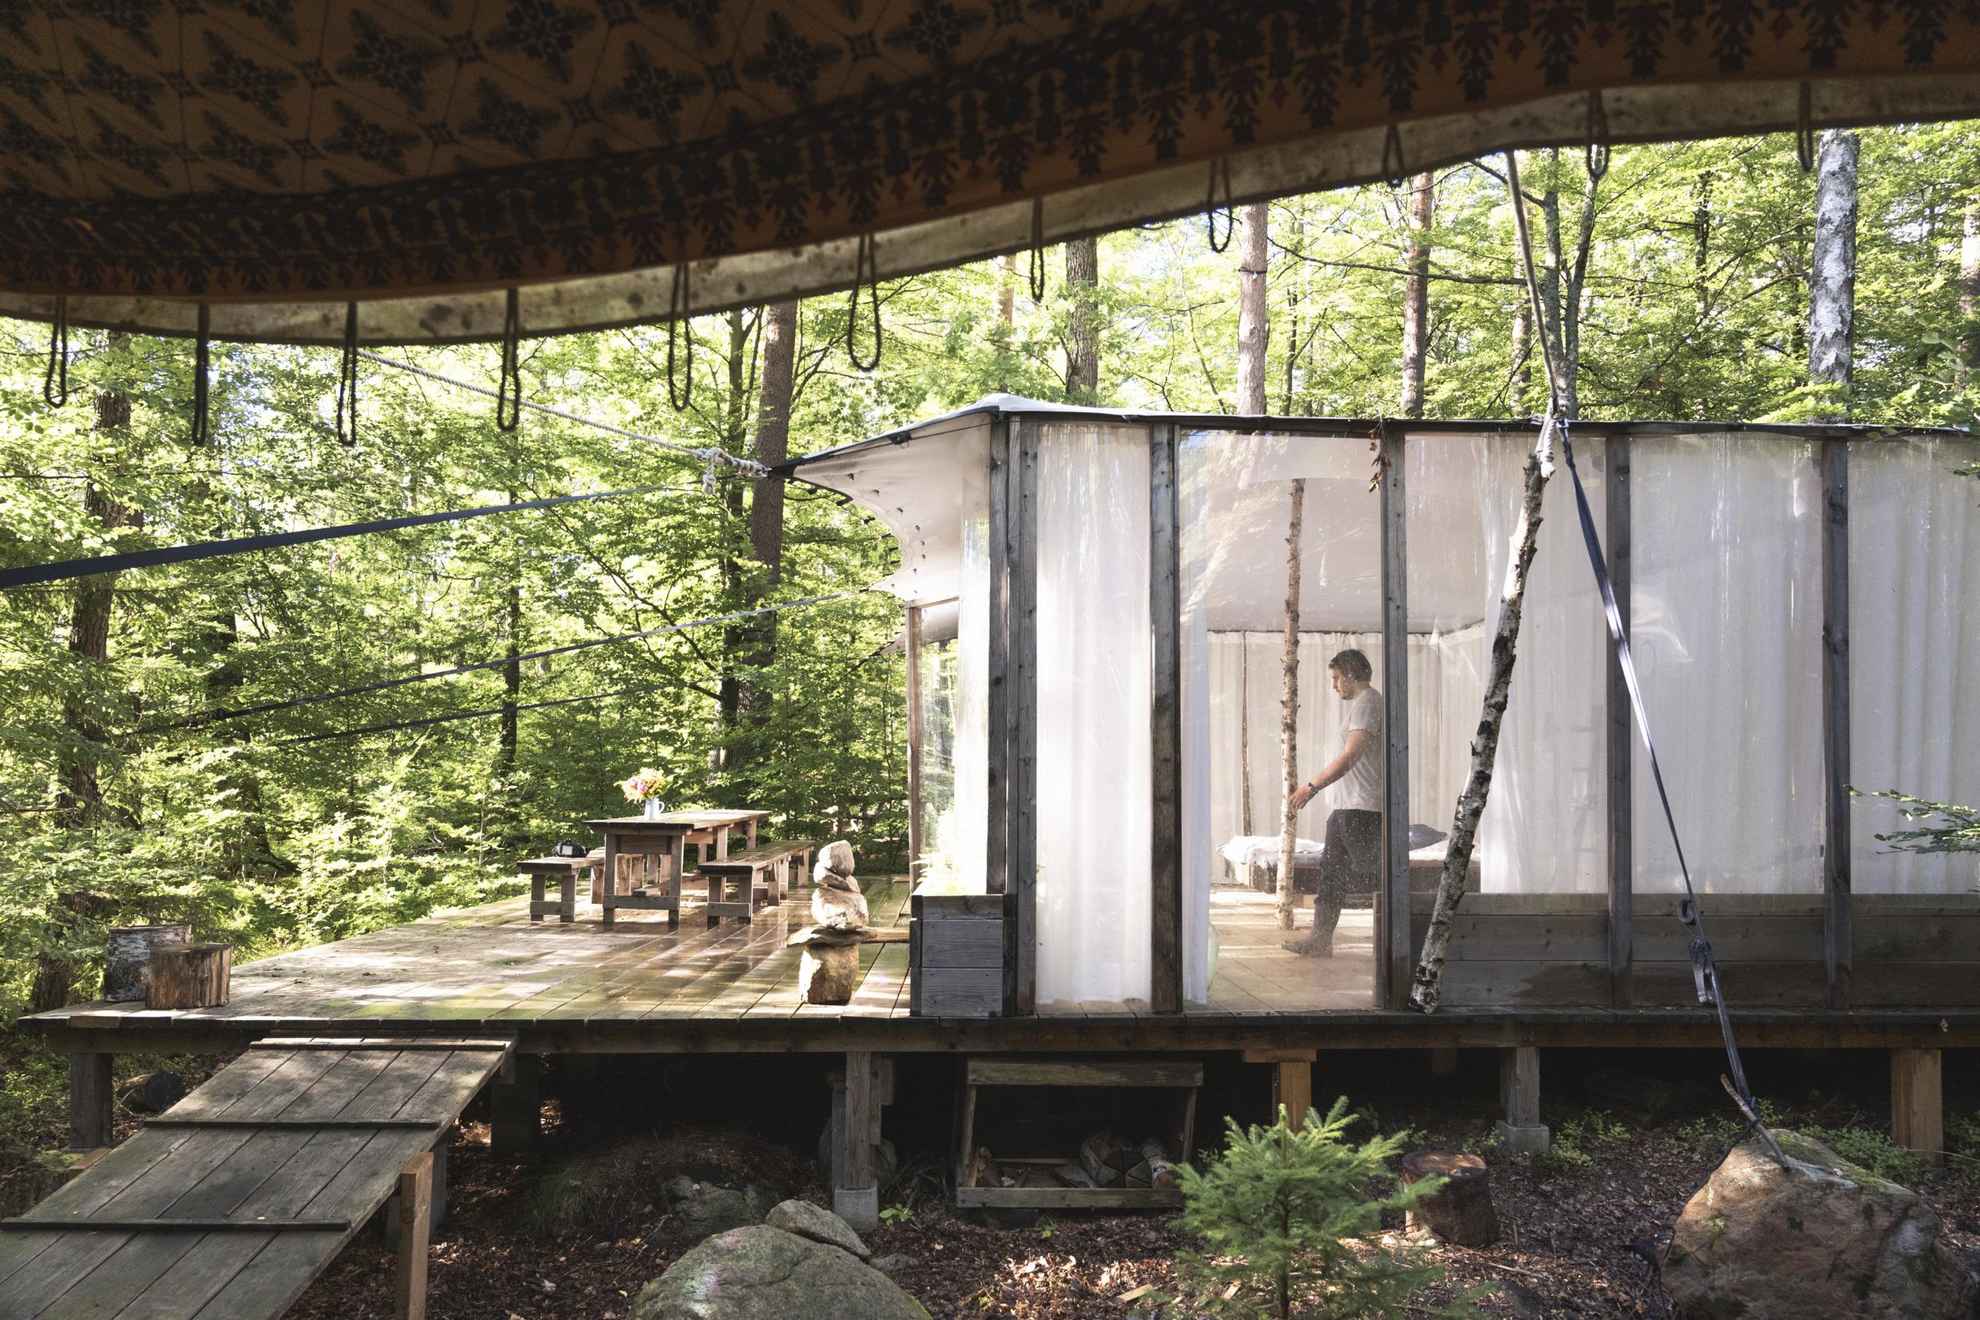 Vue extérieure sur une cabane légère et transparente dans la forêt, avec du feuillage vert tout autour et un homme marchant à l'intérieur de la cabane.